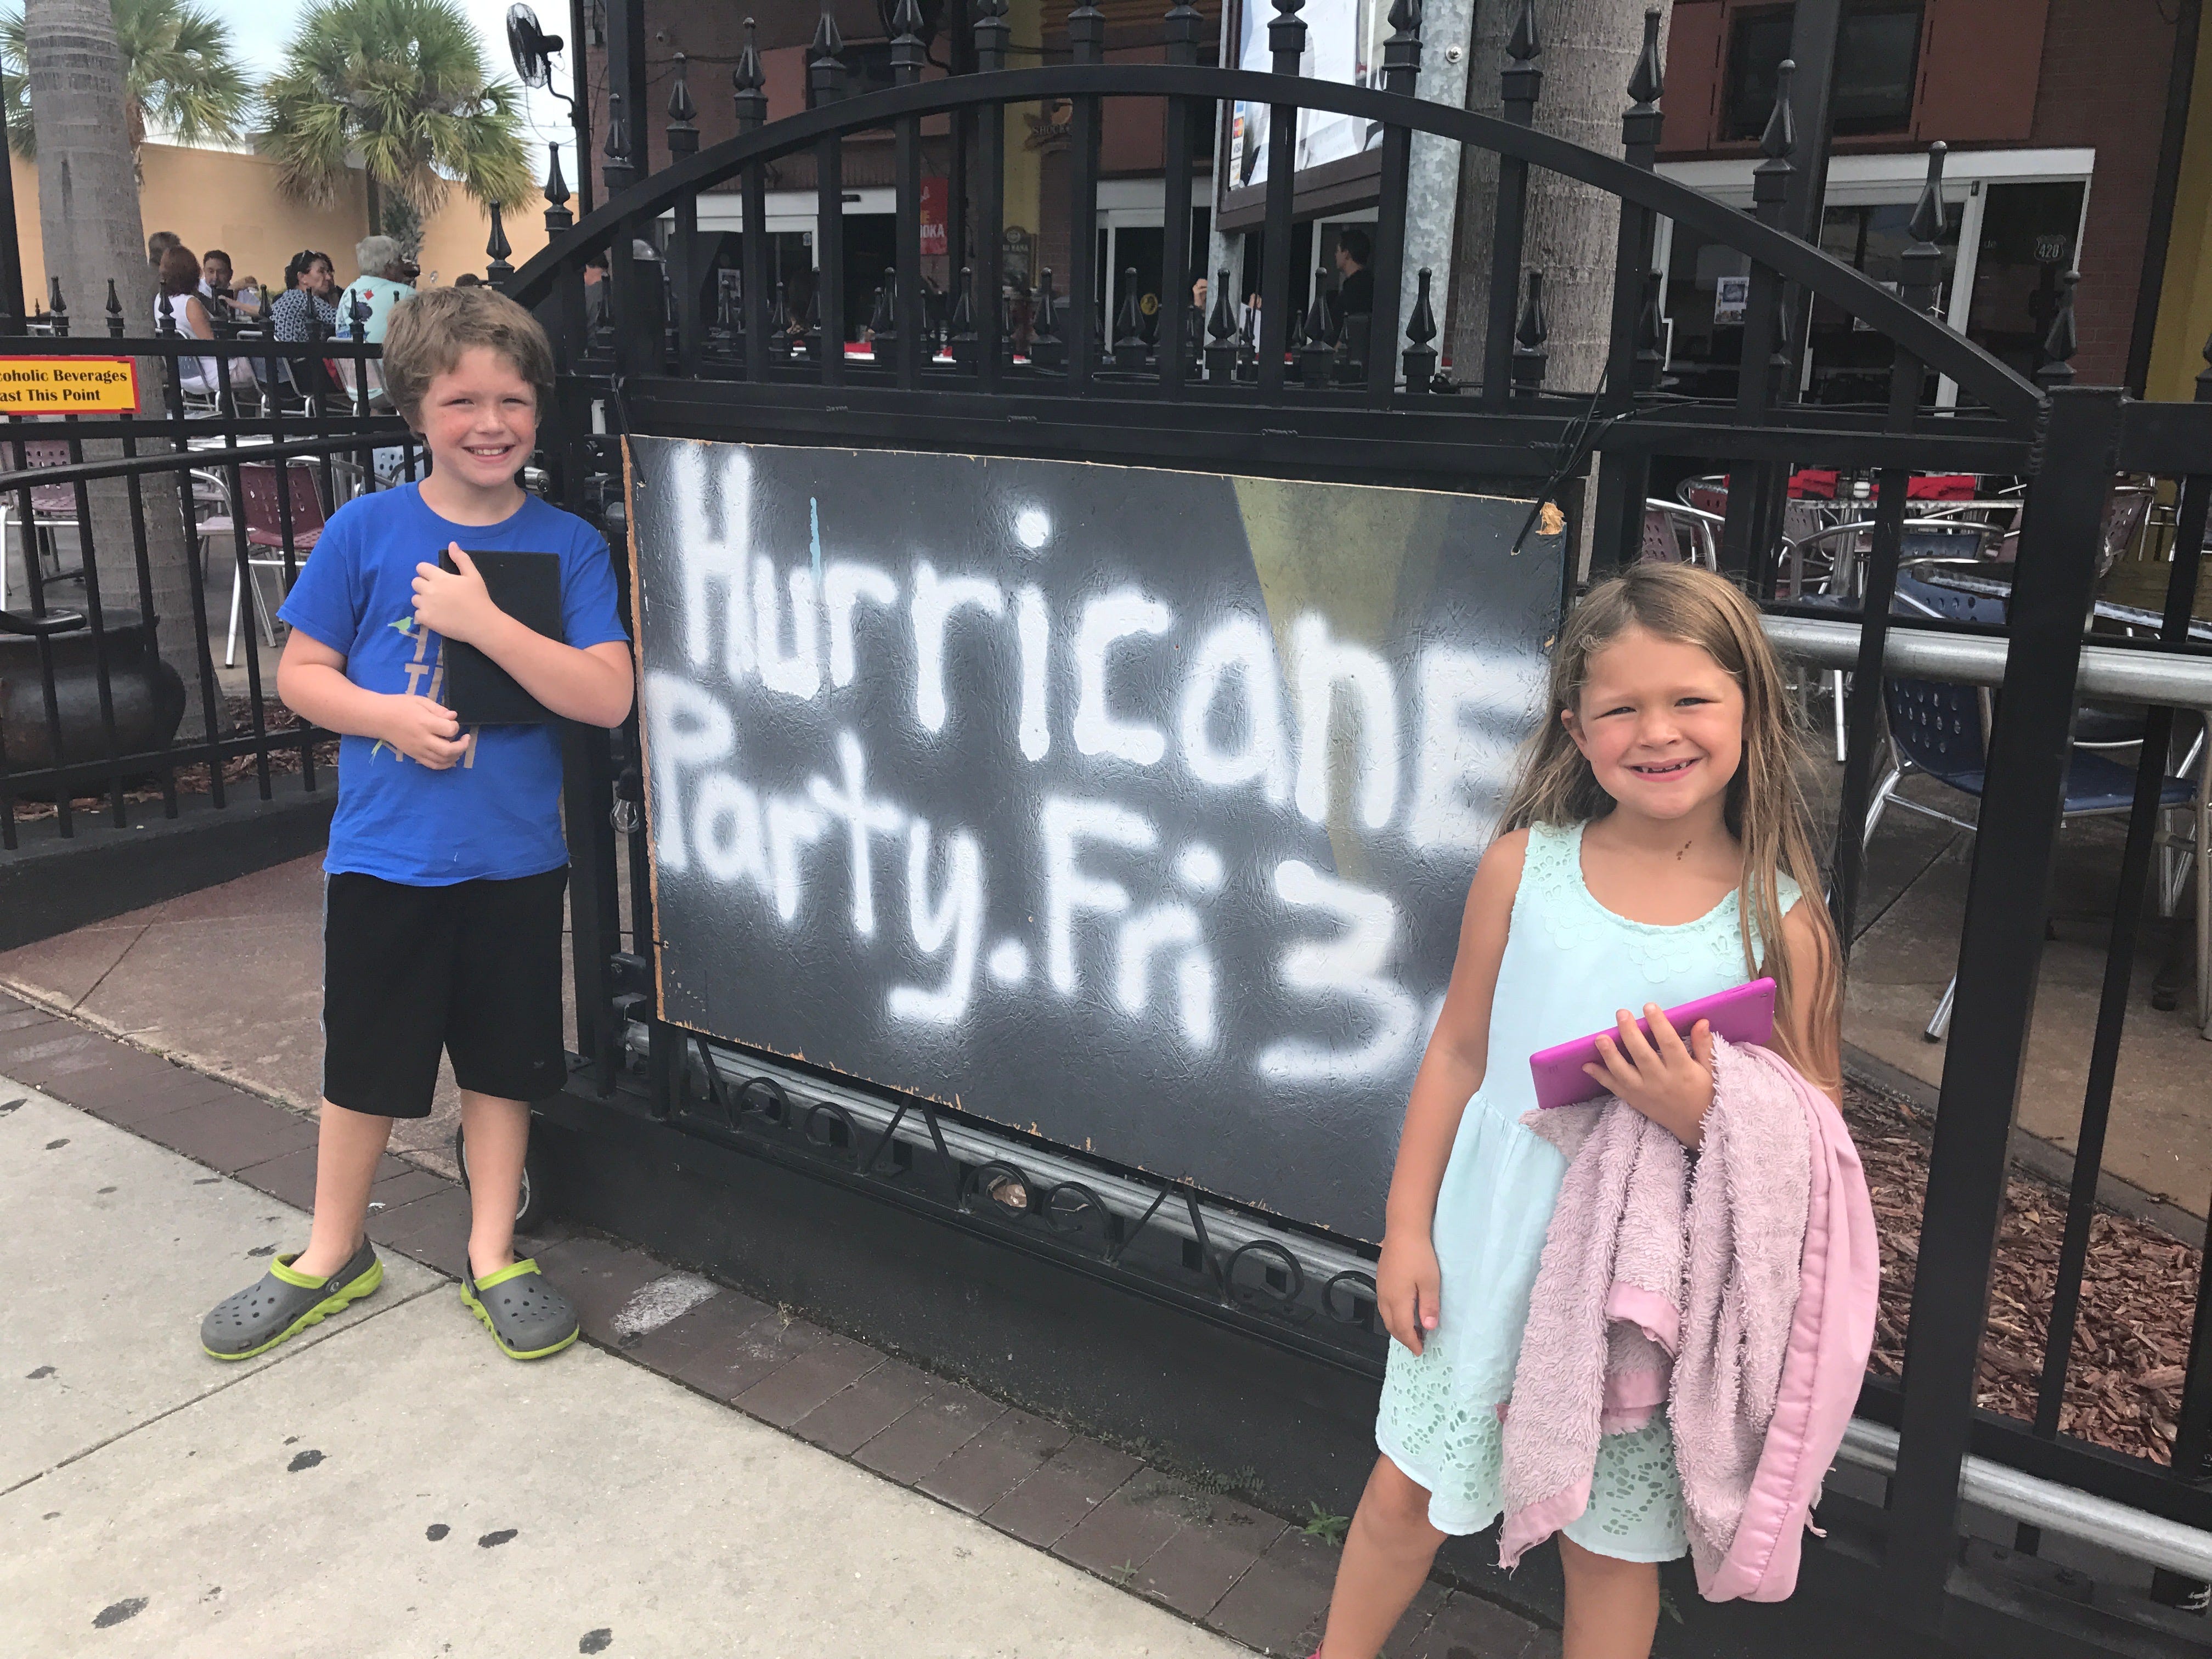 Hurrikan-Party am 3. Freitag, aufgesprüht auf einer Holzplatte auf einem Zaun, daneben stehen zwei Kinder